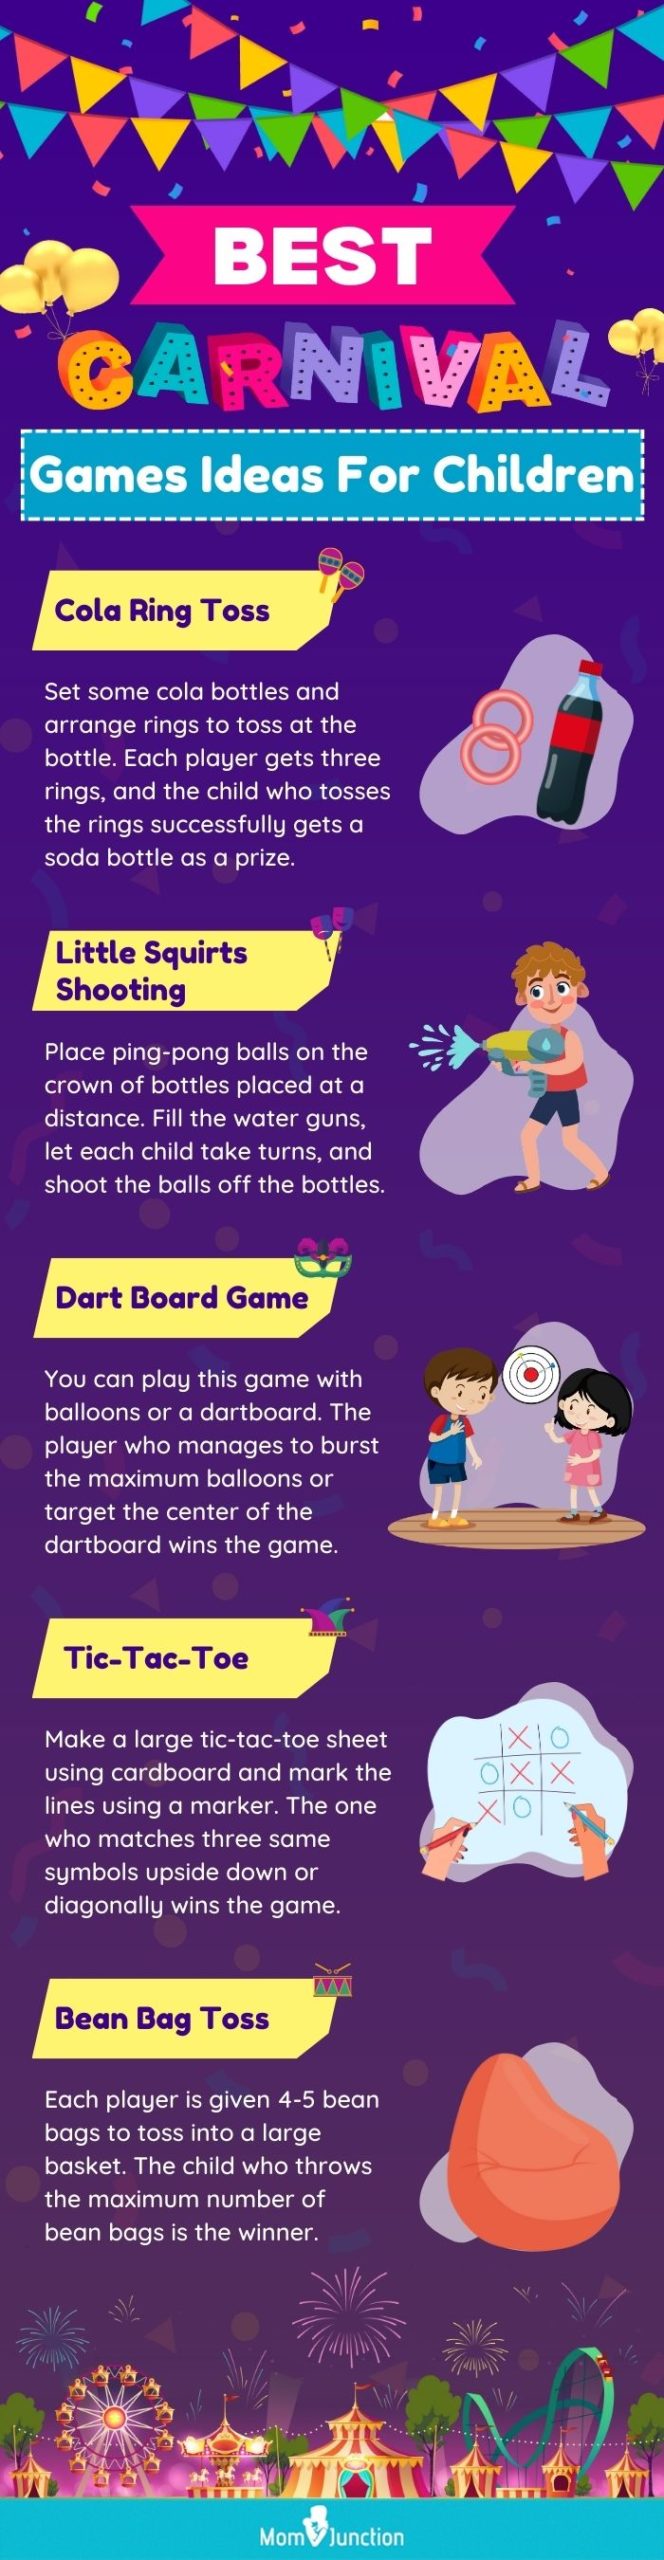 8 Tie breaker games ideas  games for kids, activities for kids